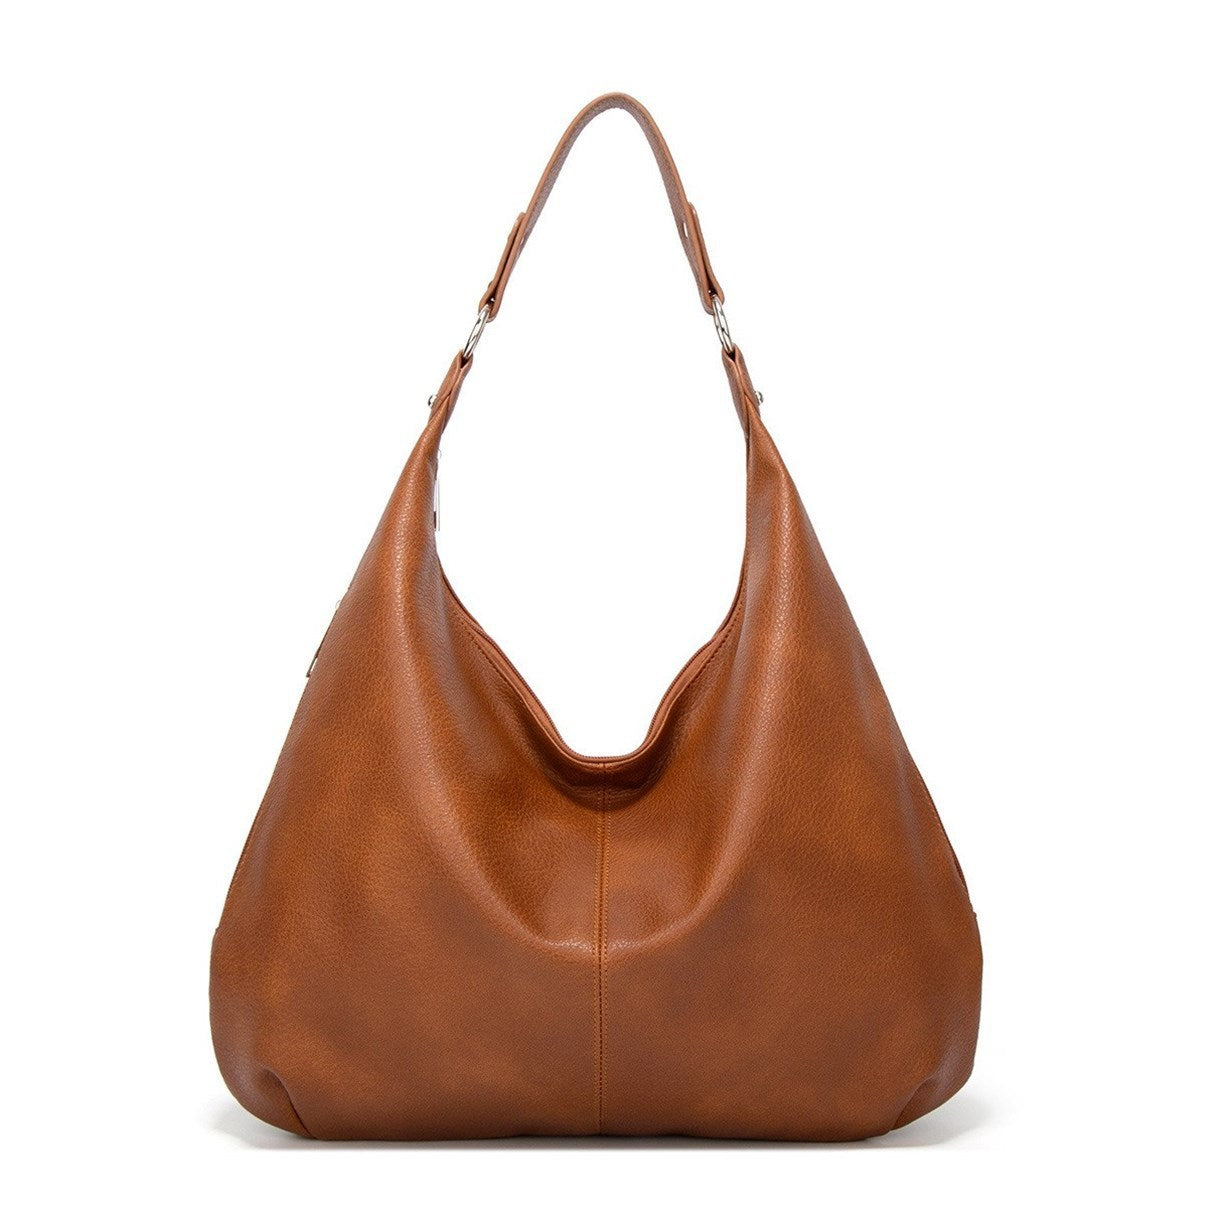 Women's Bag Shoulder Bag Casual Tote Bag